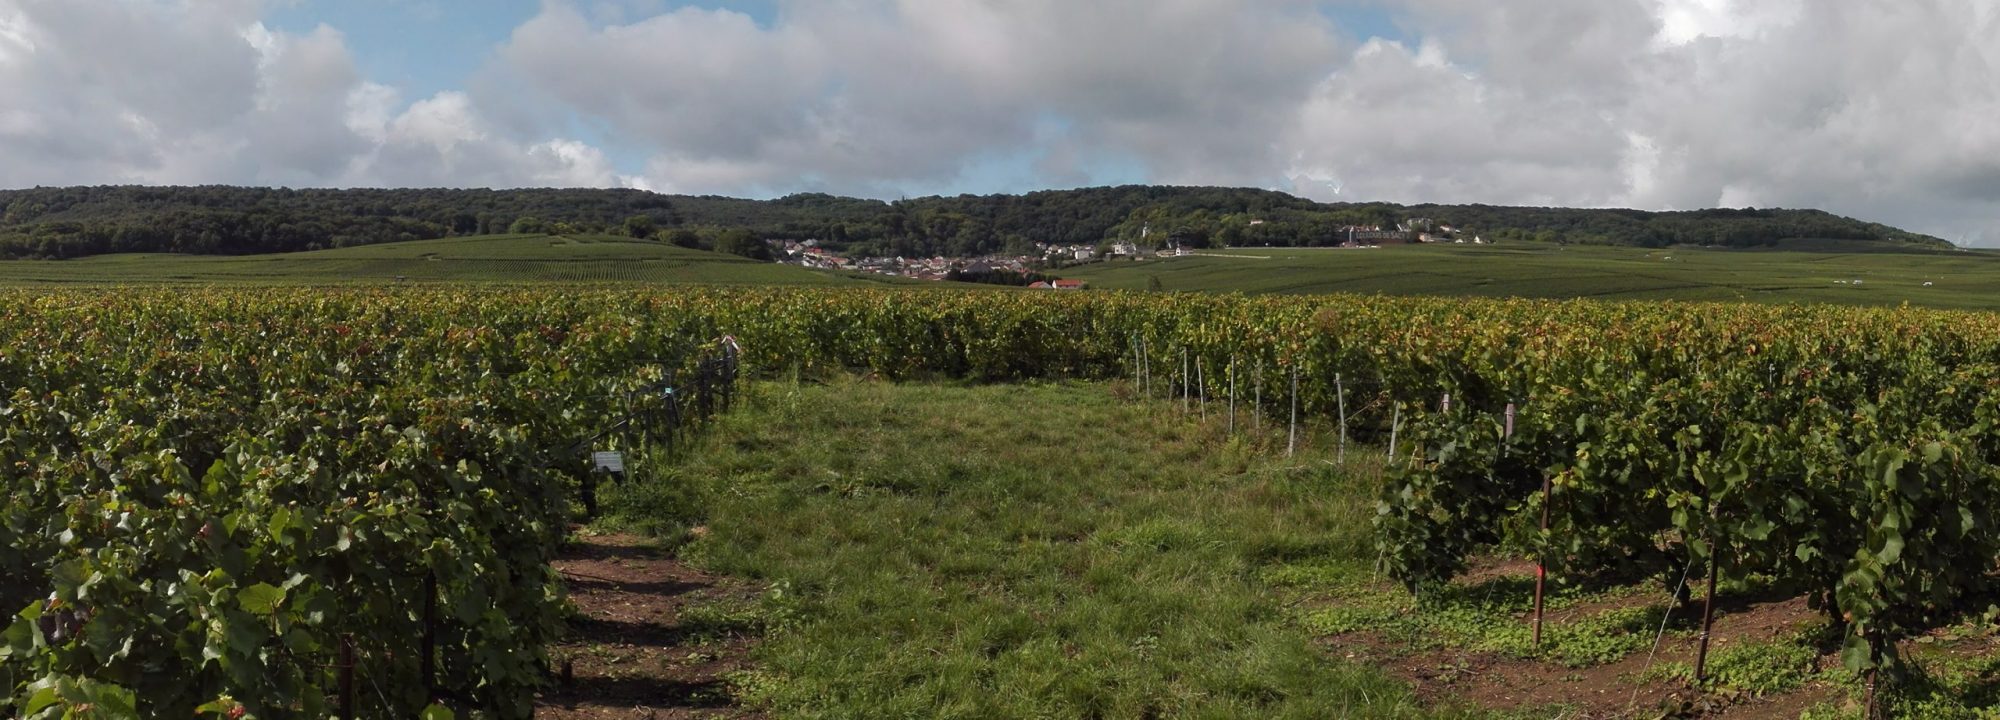 Nuestros viñedos - Una viticultura altamente sostenible <br />
en un Terruño Grand Cru excepcional